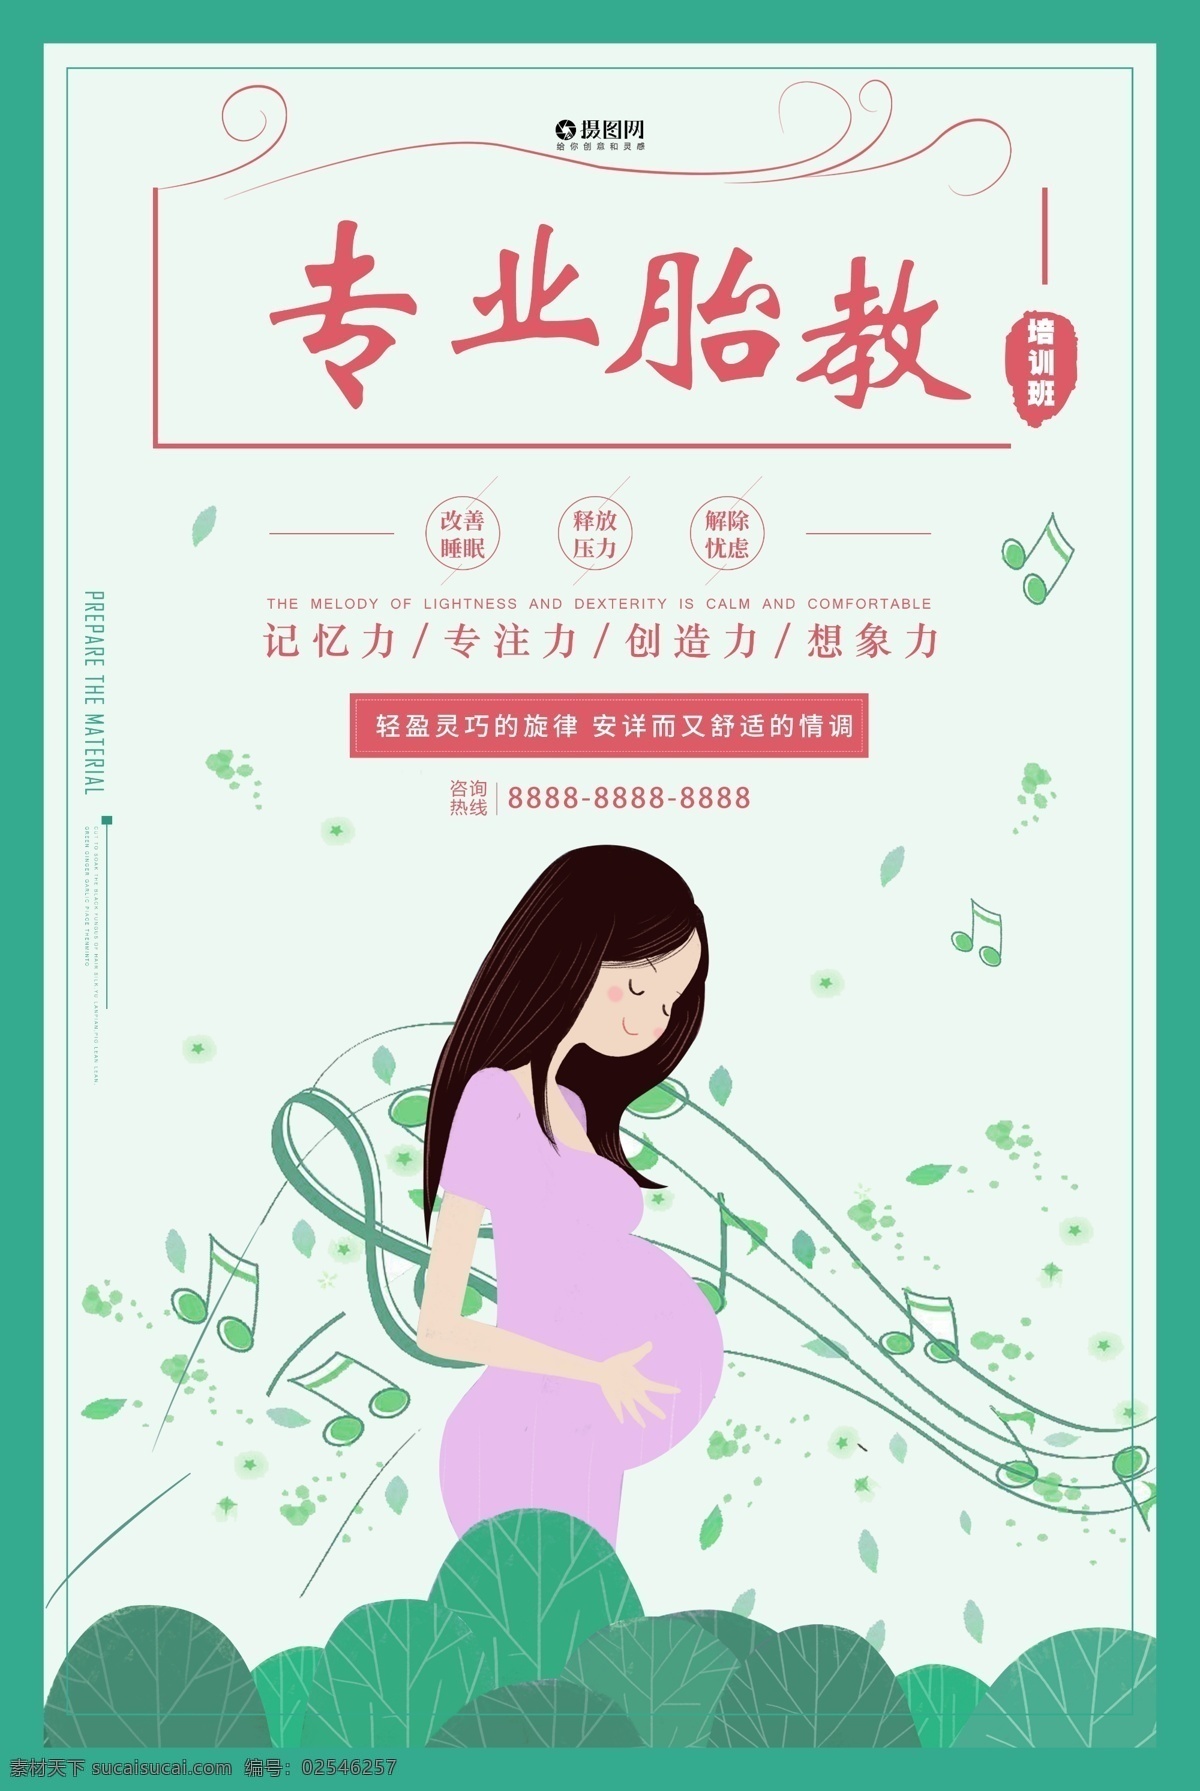 可爱母婴海报 清新胎教 胎教 海报图片 胎教音乐 海报 胎教宣传海报